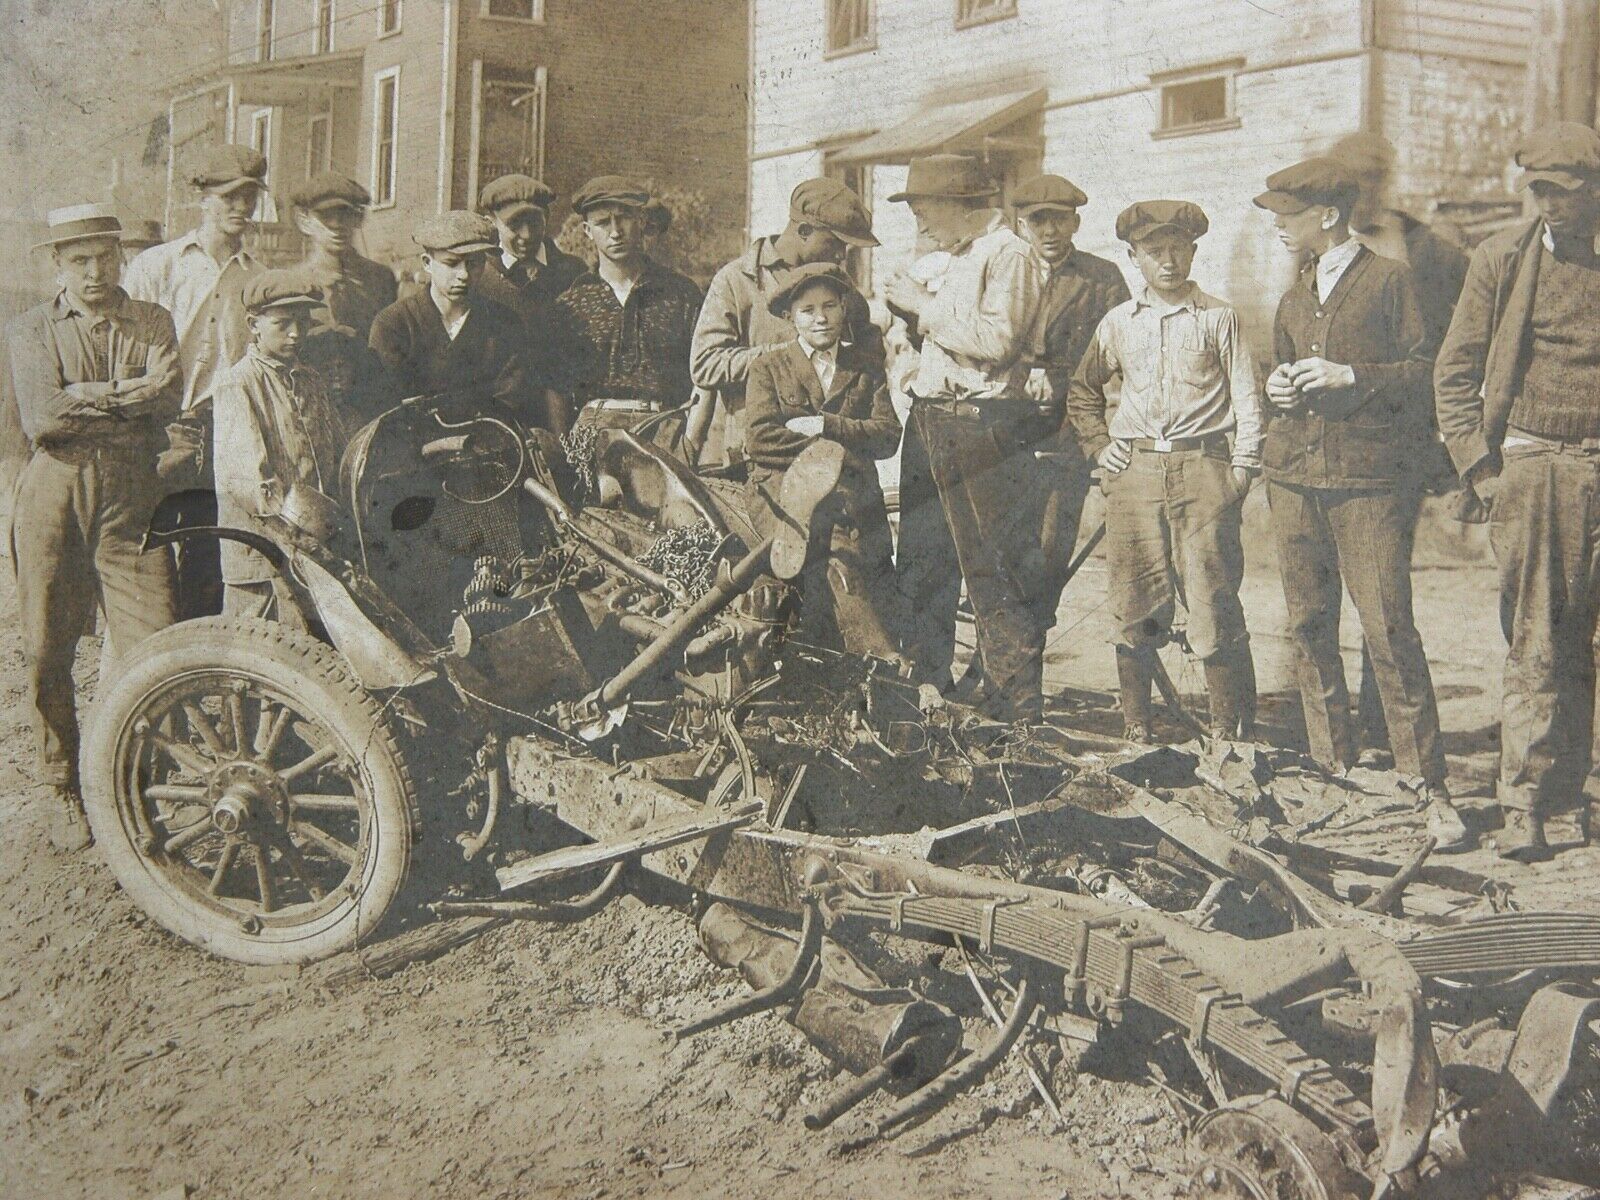 Antique CAR CRASH Photograph 1900s - 1910s BUICK ACCIDENT Explosion